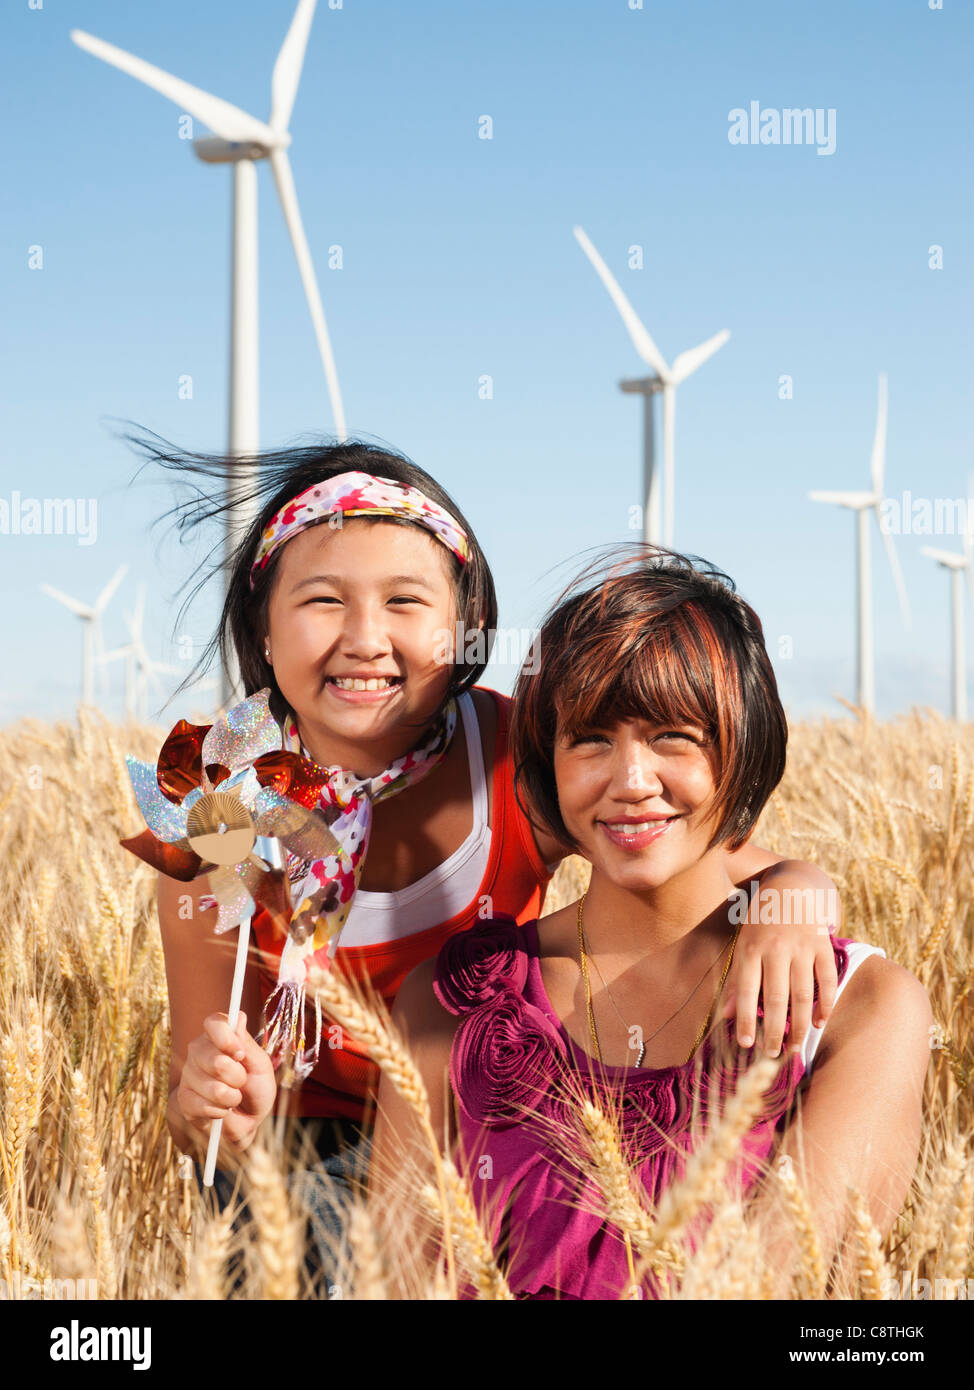 USA, Ohio, Wasco, Portrait de deux jeunes filles debout dans le champ de blé, les éoliennes en arrière-plan Banque D'Images